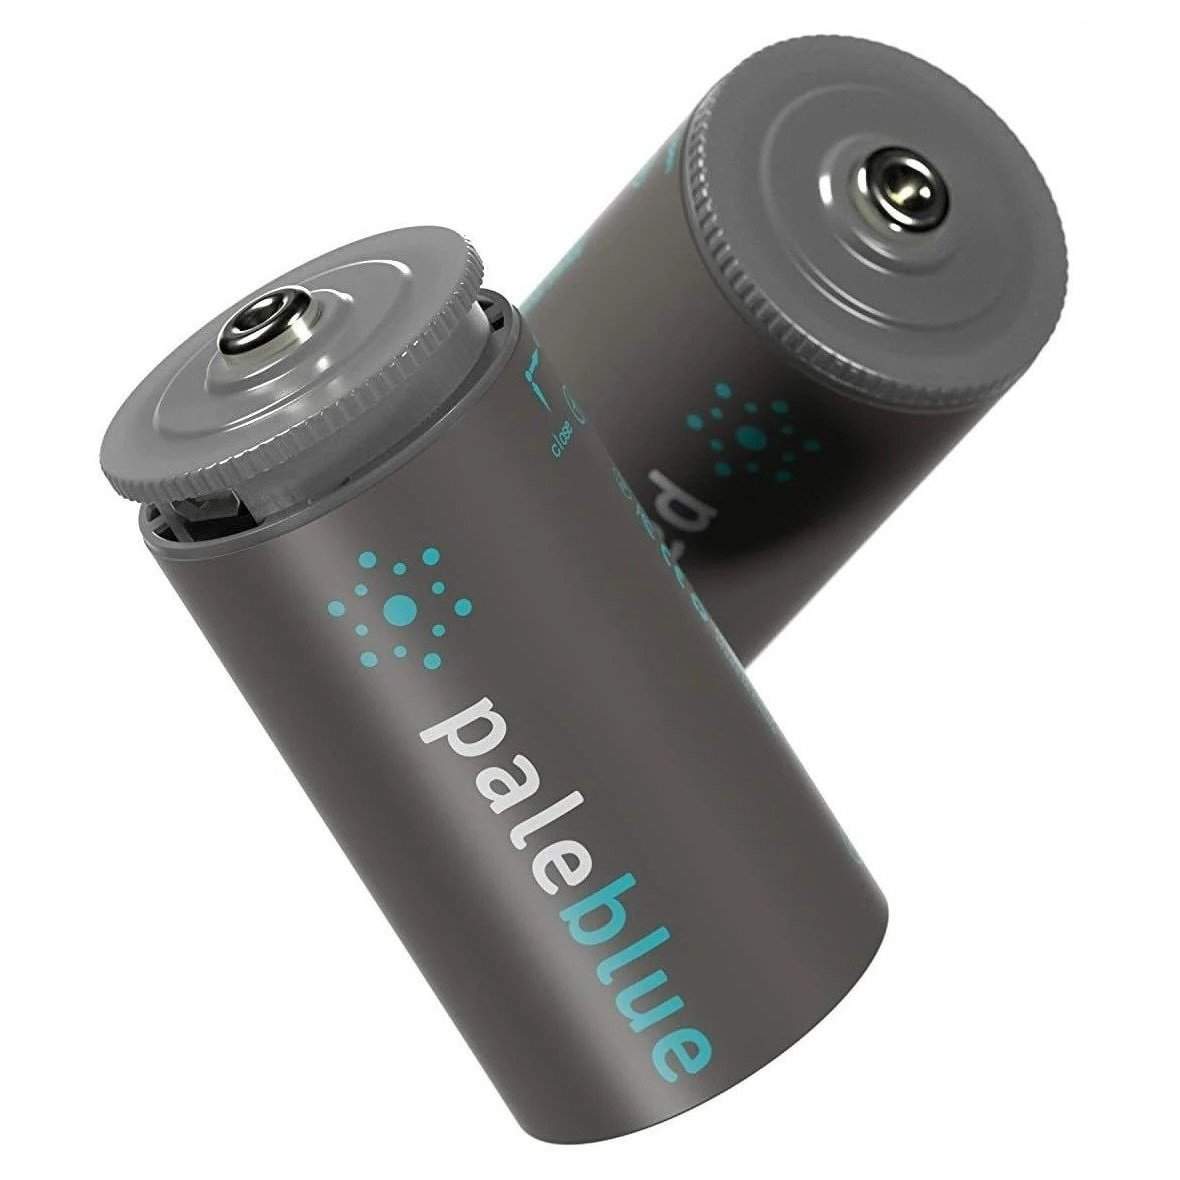 2 Piles Rechargeables USB D / HR20 5000mAh PaleBlue Lithium Ion